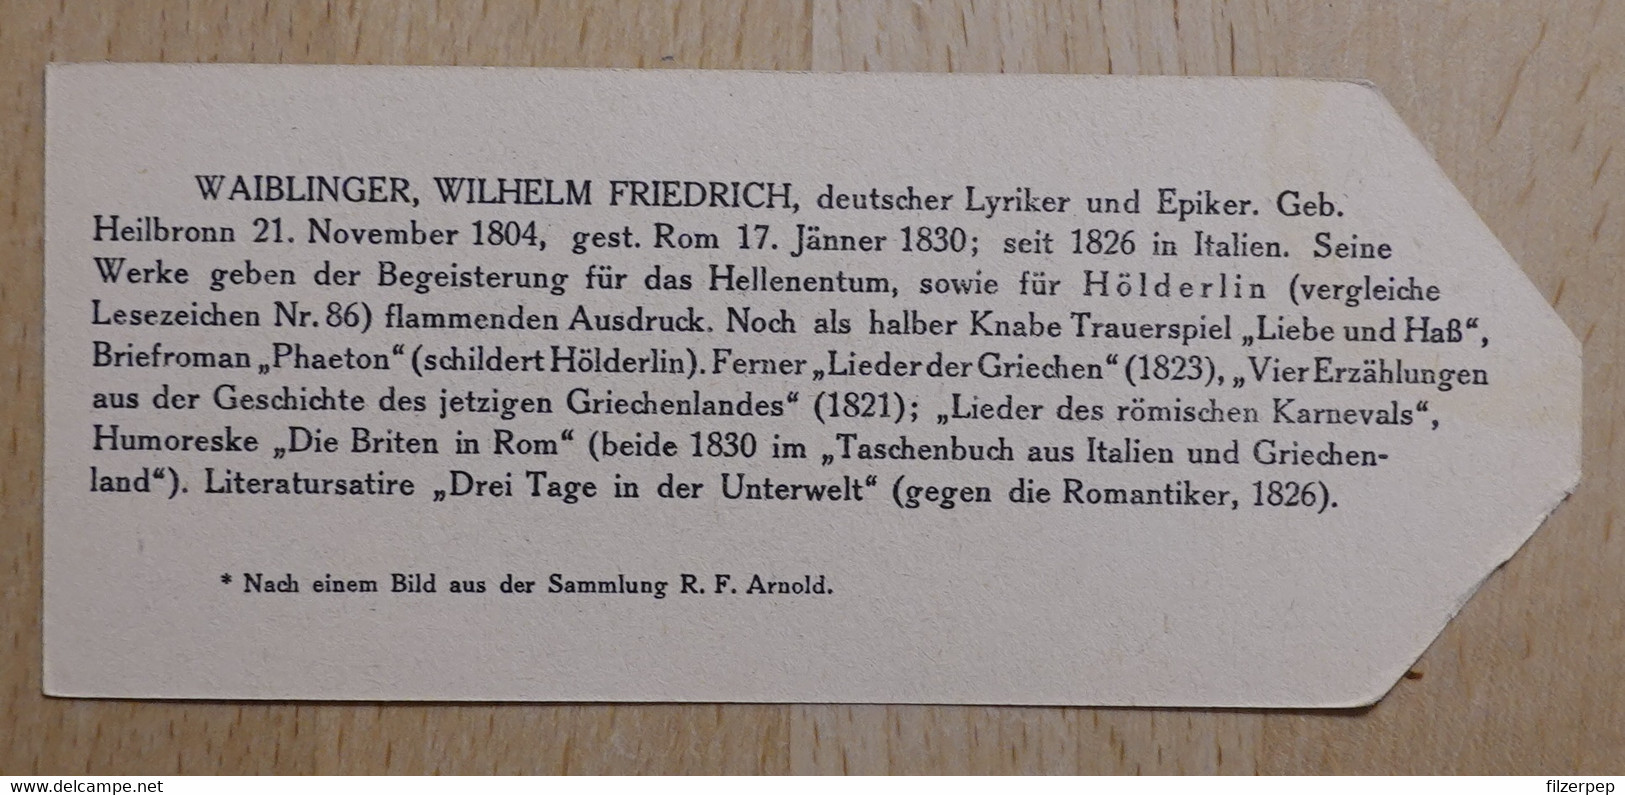 Wilhelm Friedrich Waiblinger Lyriker Heilbronn Rom - 972 - Olleschau Lesezeichen Bookmark Signet Marque Page Portrait - Marque-Pages